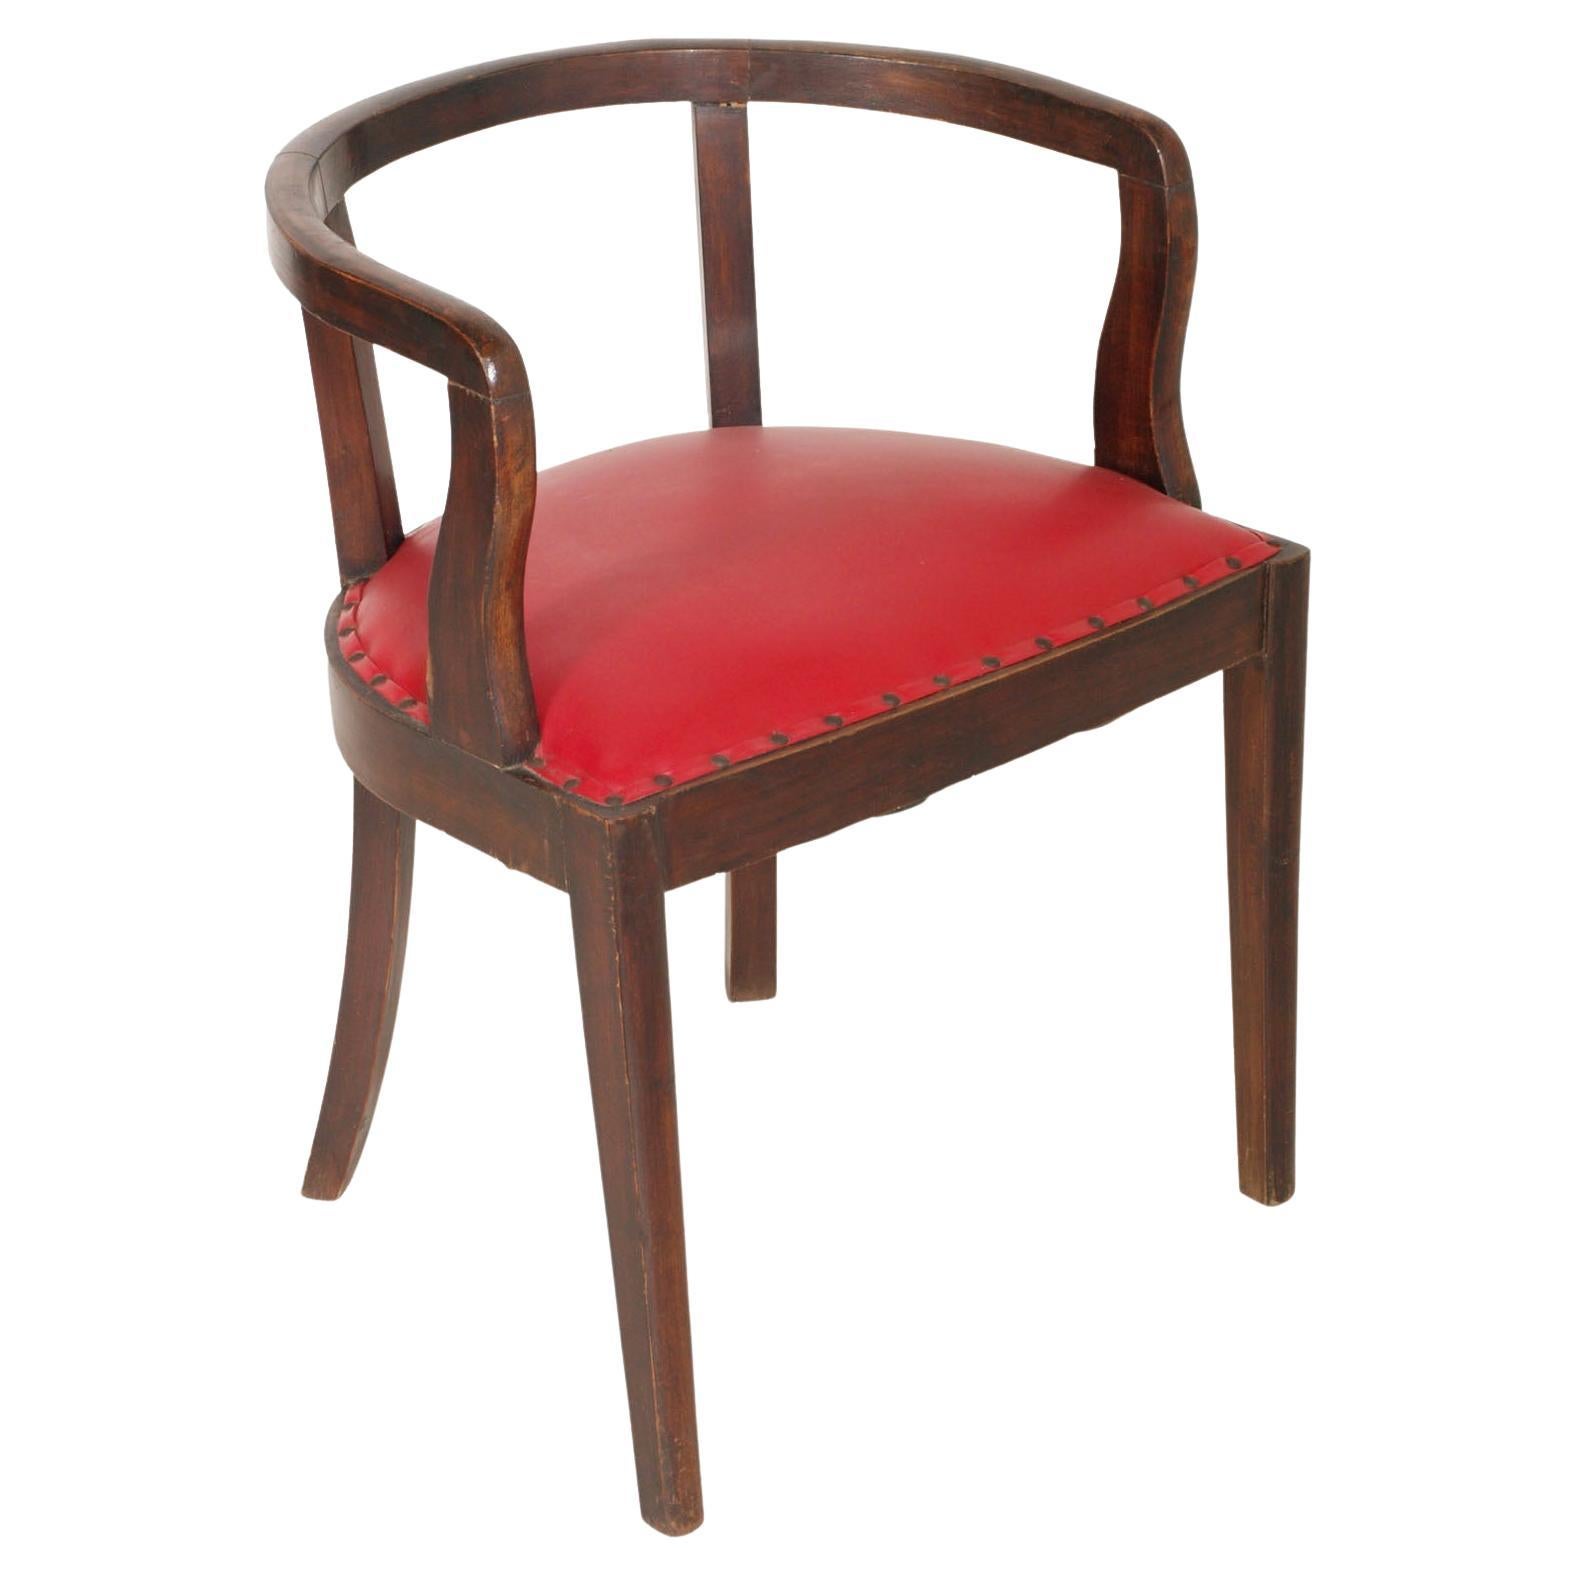 Französischer Art-Déco-Sessel der 1920er Jahre, Nussbaum braun, rote Haut, Jules Leleu zugeschrieben